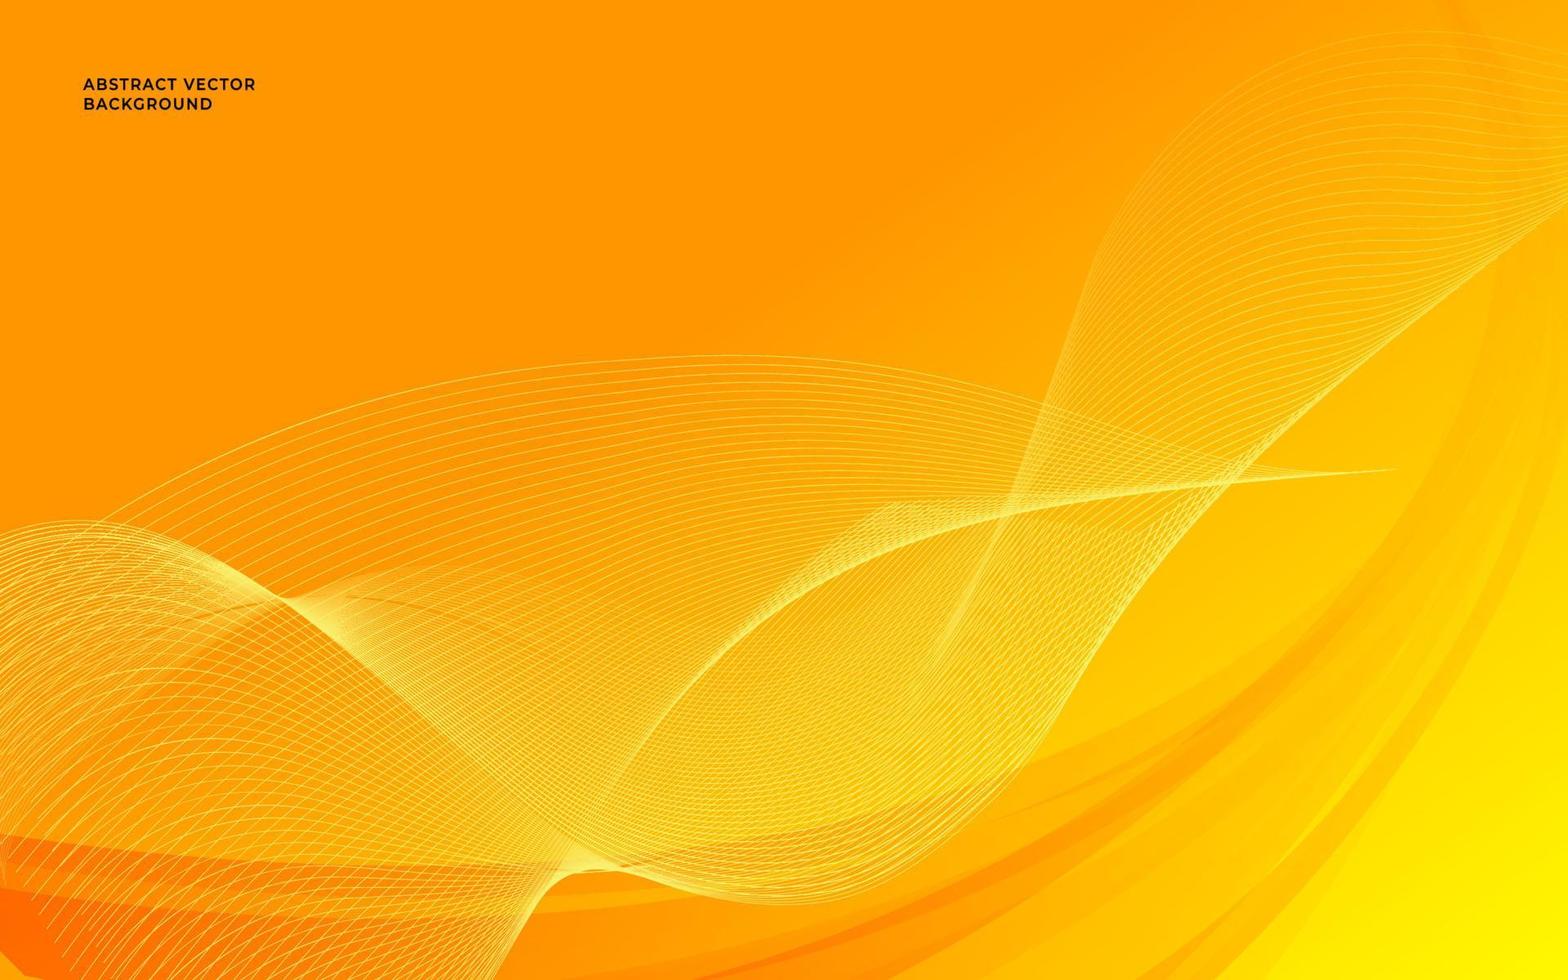 gelber abstrakter farbverlaufshintergrund mit welle und glatter linie. orangefarbener abstrakter Wellenhintergrund. Vektor-Illustration vektor